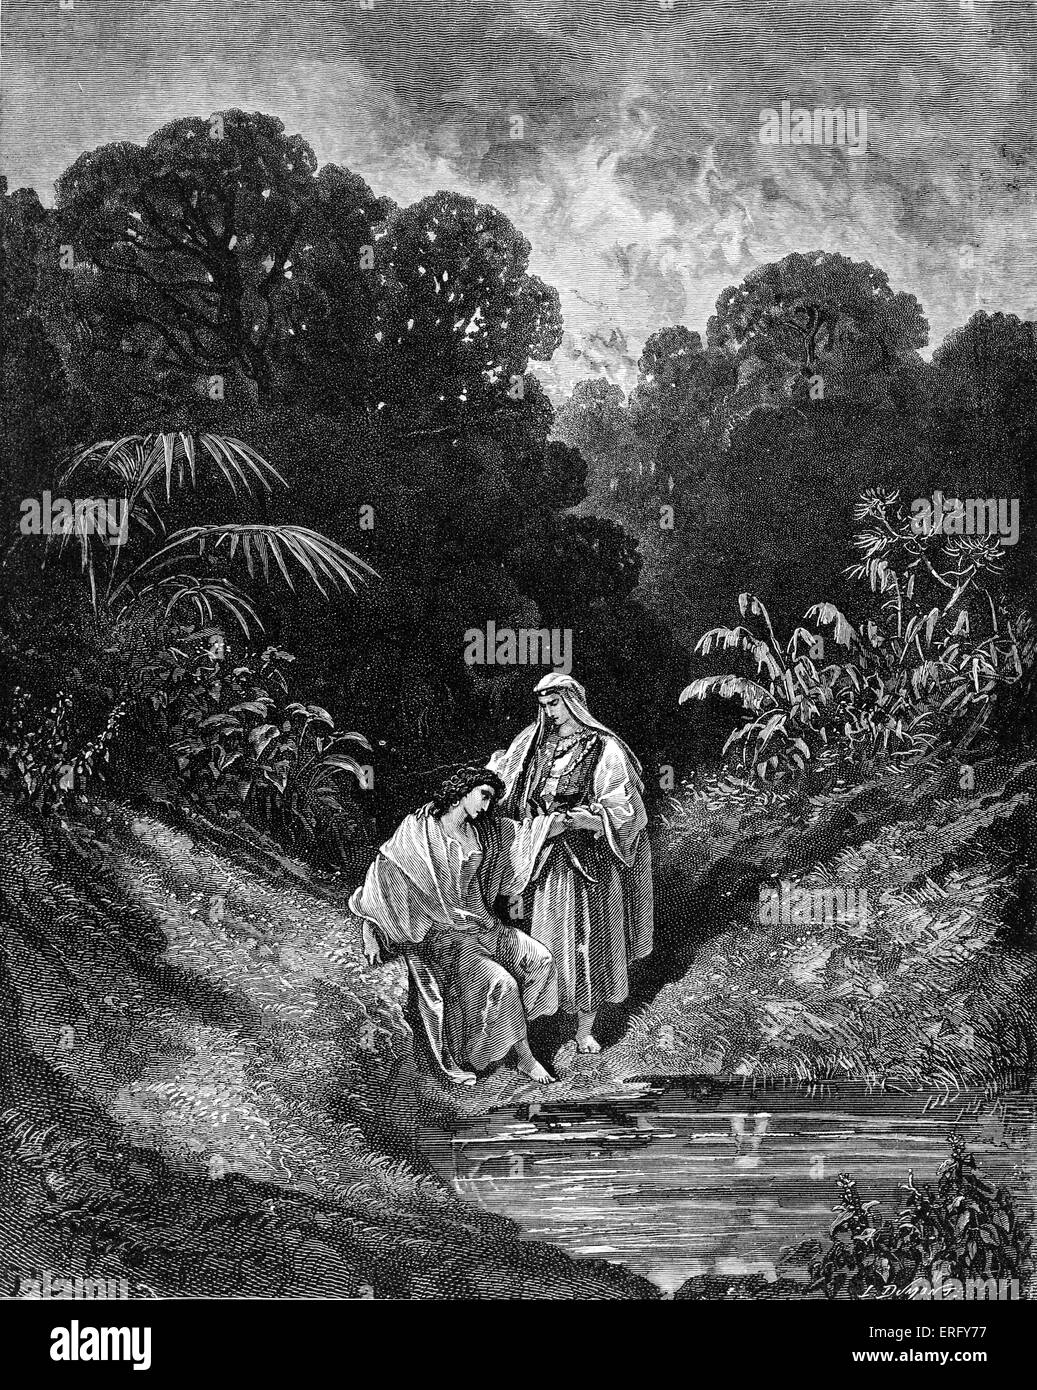 David e il suo amico,Jonathan. 1 Samuele 20. Disegnata da Gustave Doré, artista francese, b 6 Gennaio 1832 - 23 gennaio 1883. Incisi da Dumont l. Foto Stock